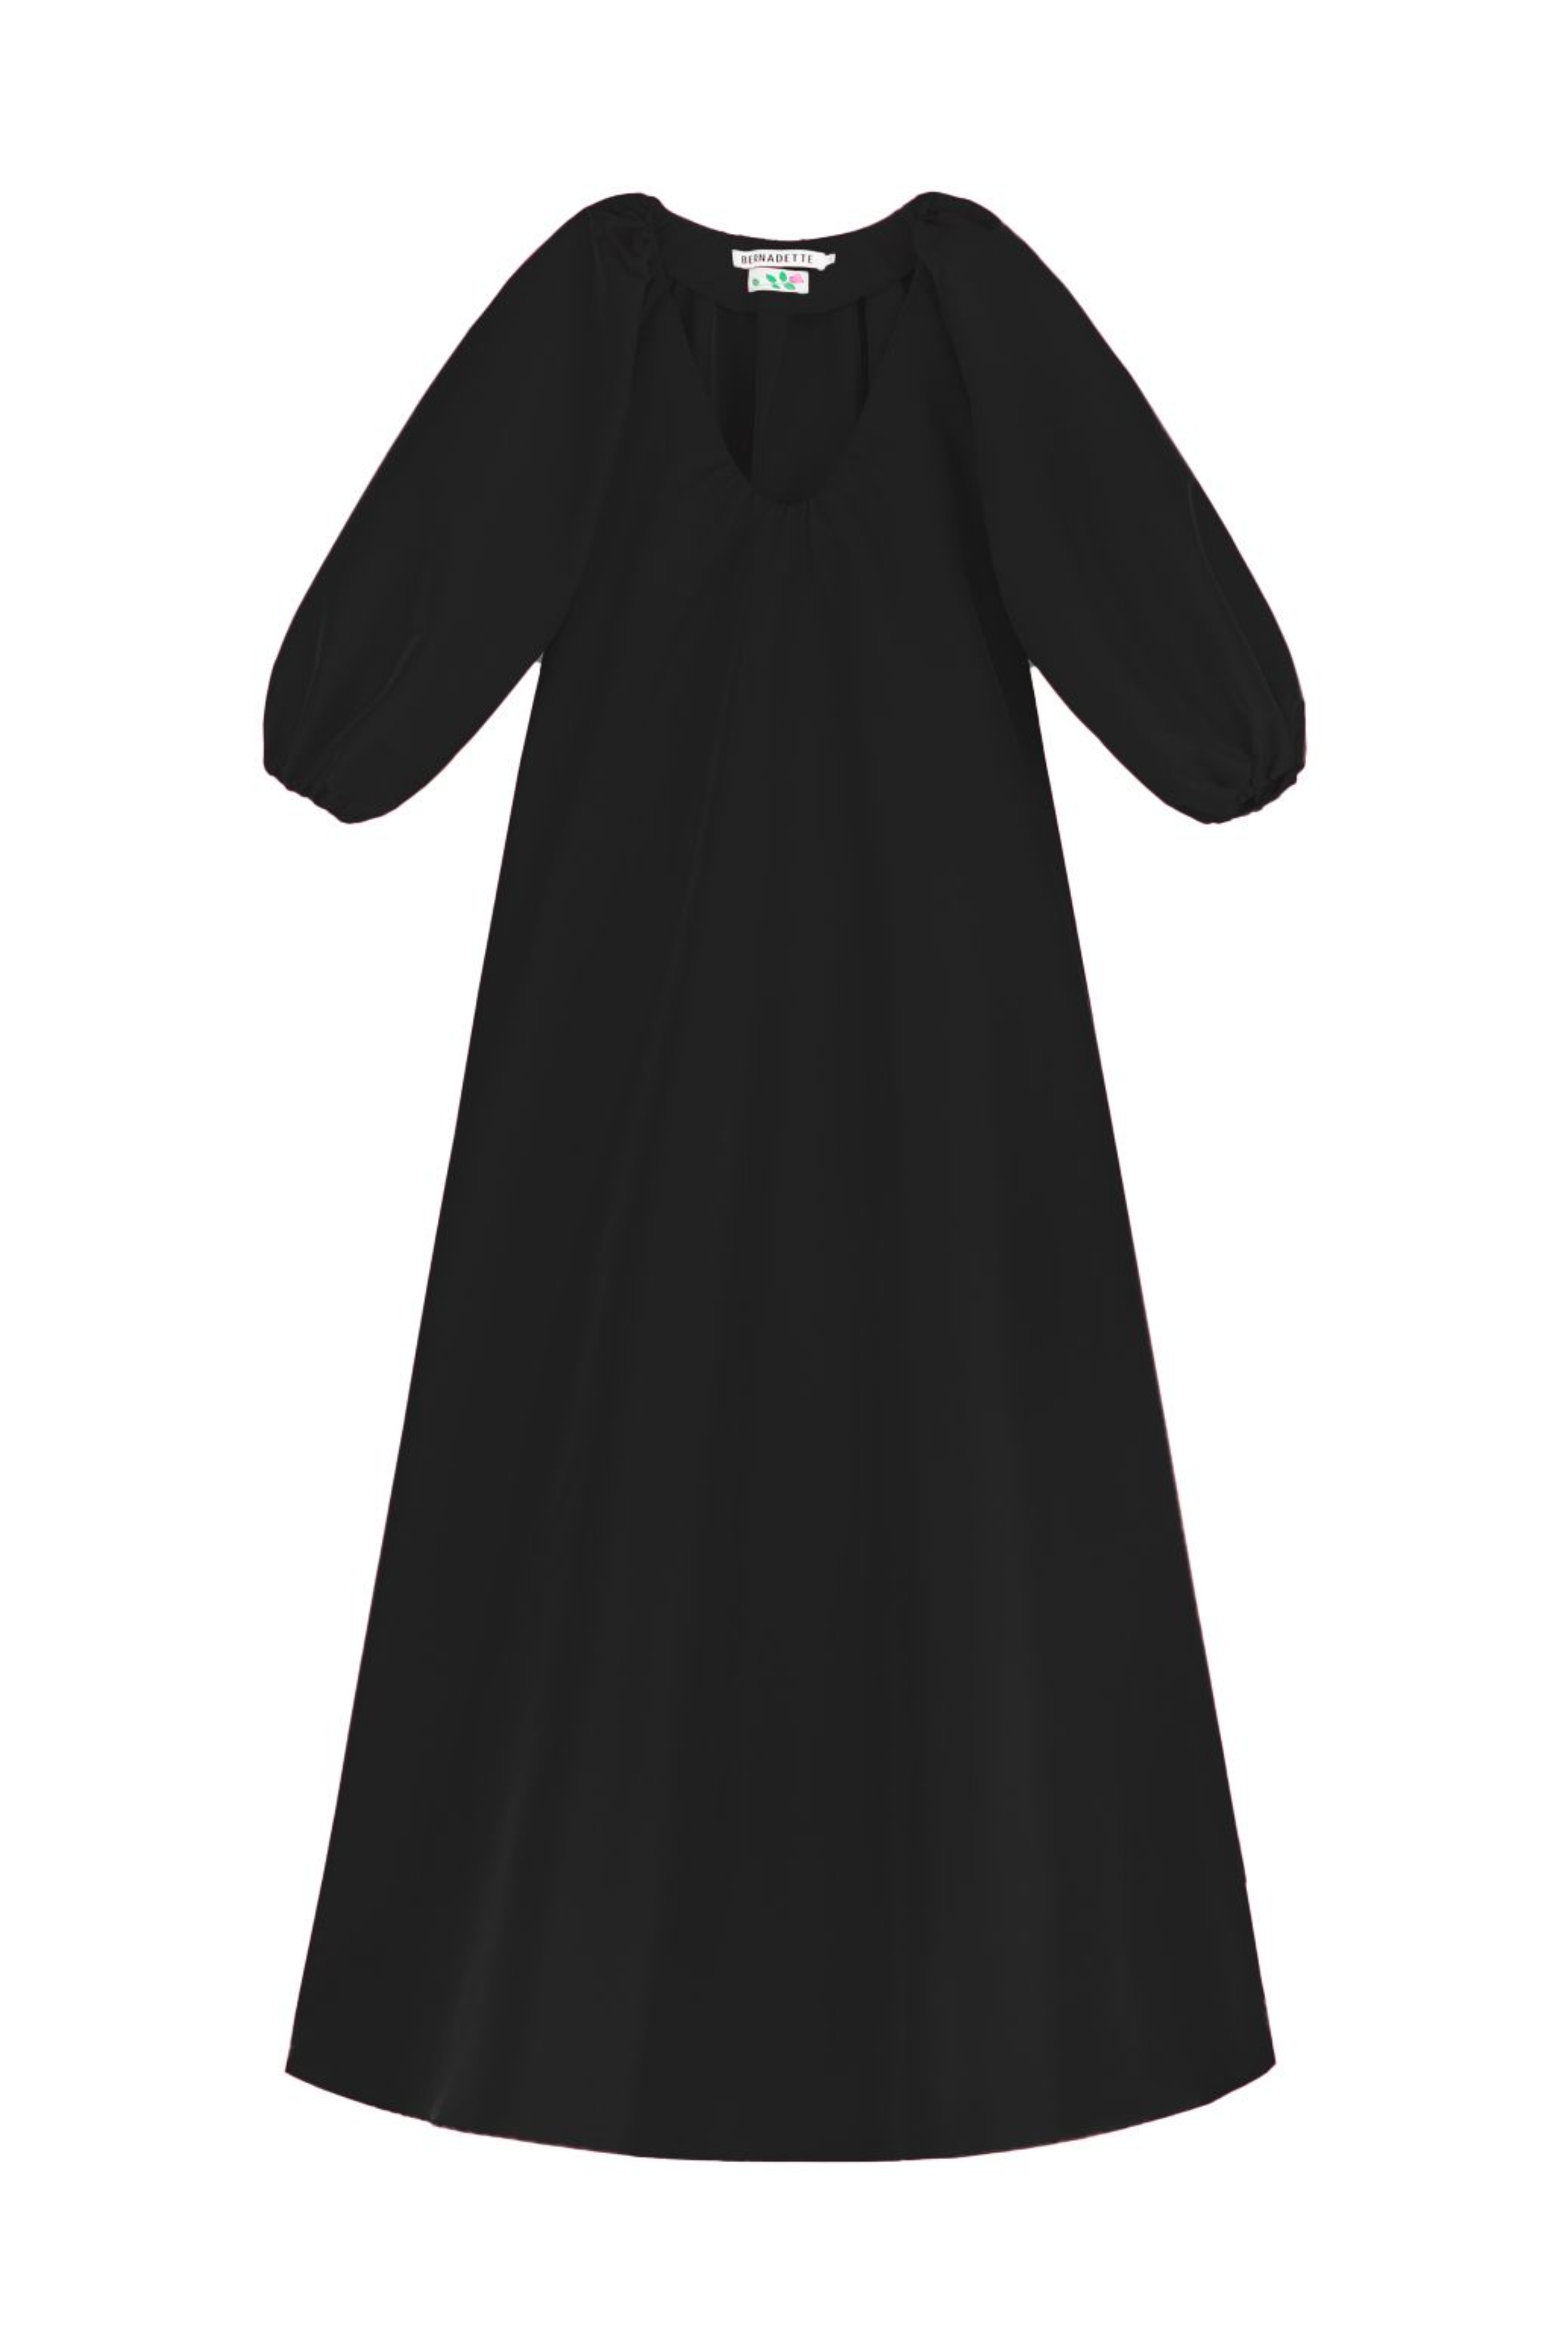 George Dress in Black